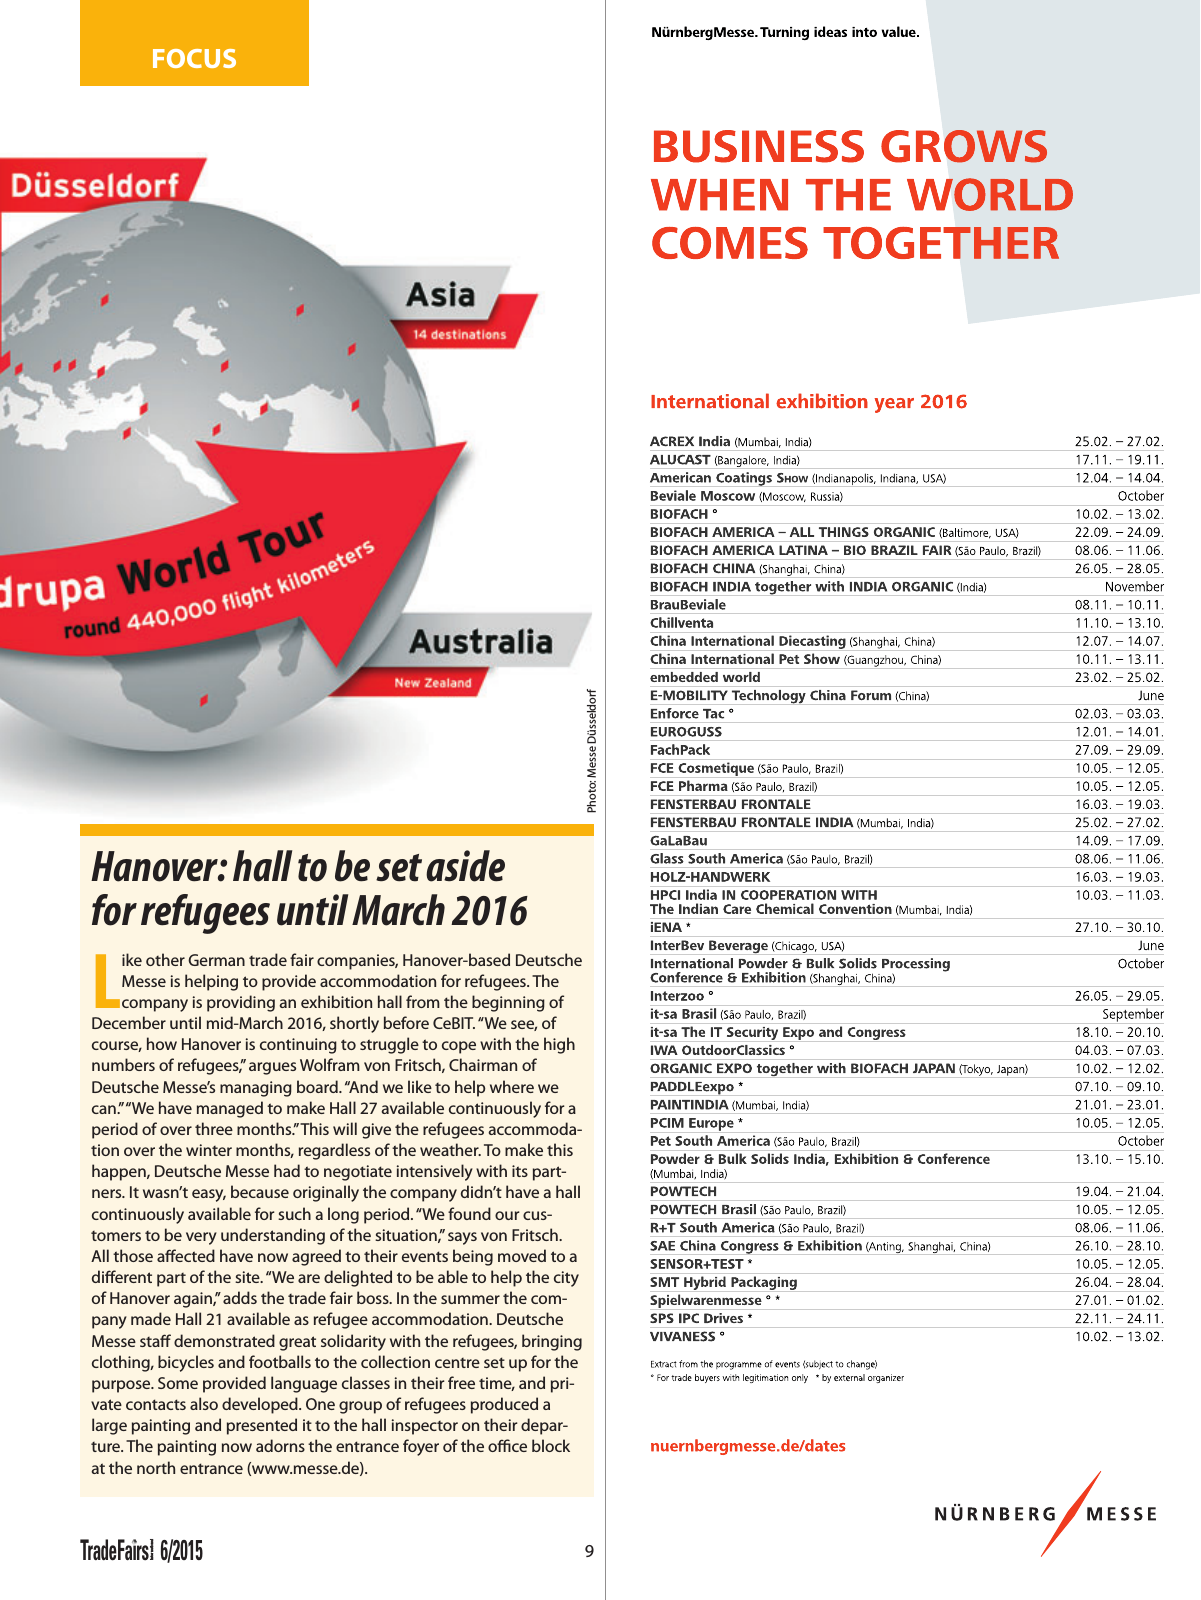 Vorschau TFI Trade-Fairs-International 06/2015 Seite 9